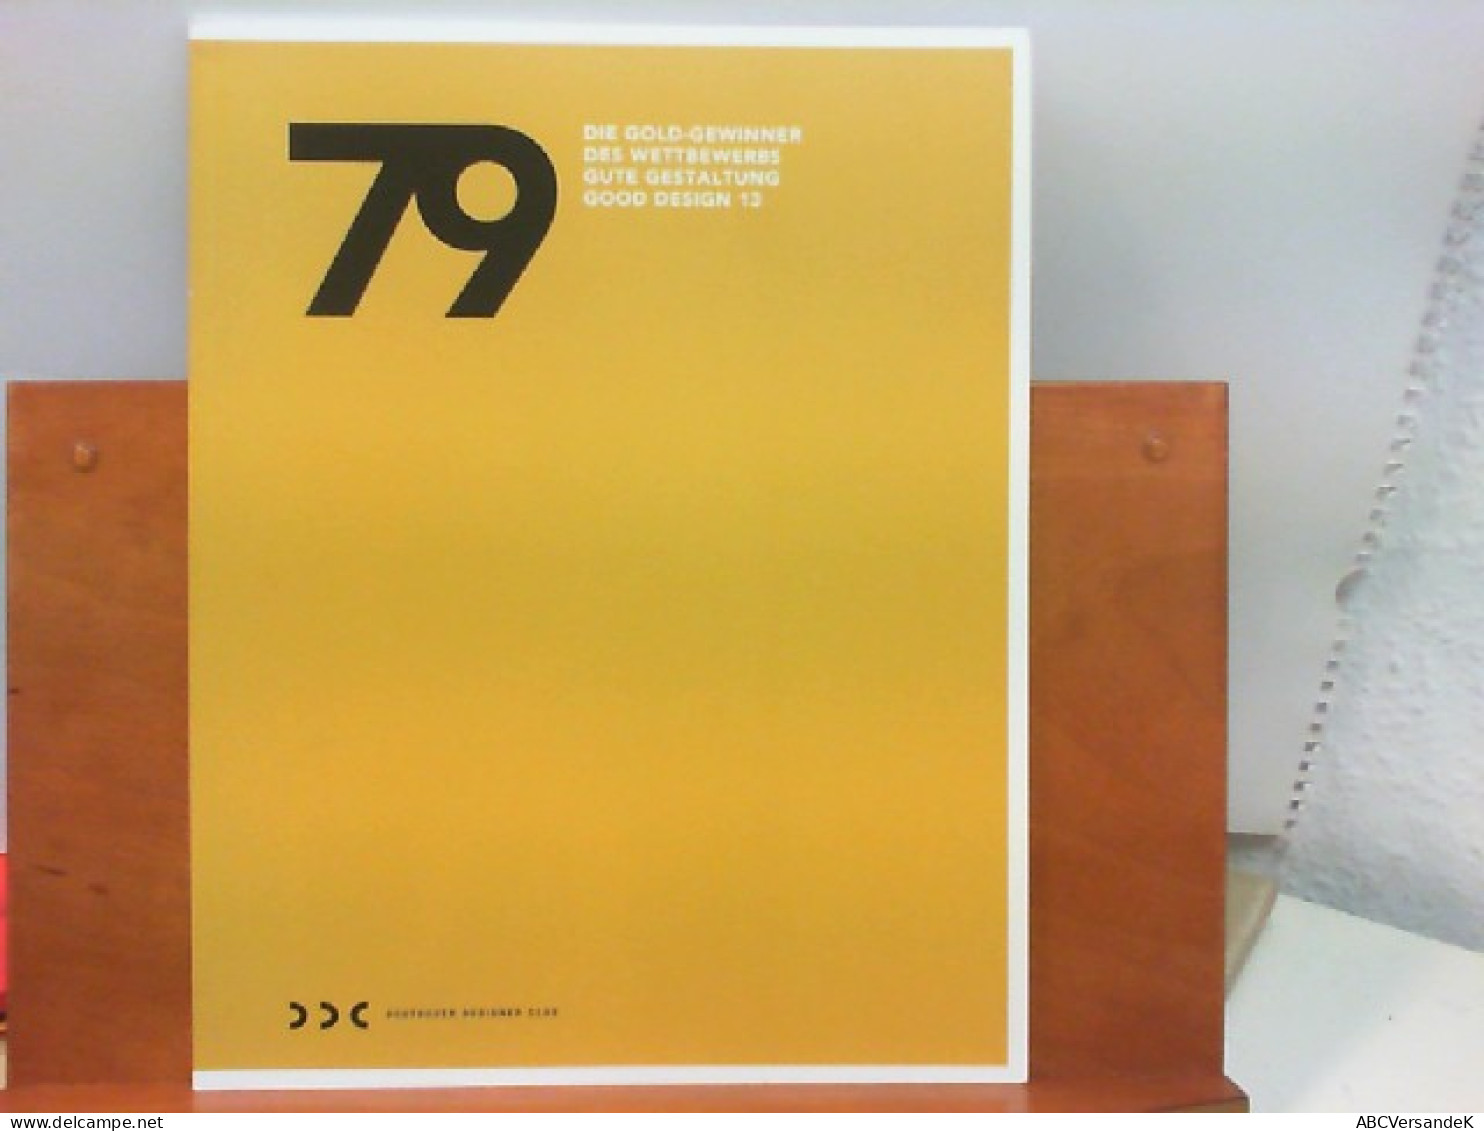 79 - Die Gold - Gewinner Des Wettbewerbs Gute Gestaltung Good Design 13 - Grafica & Design